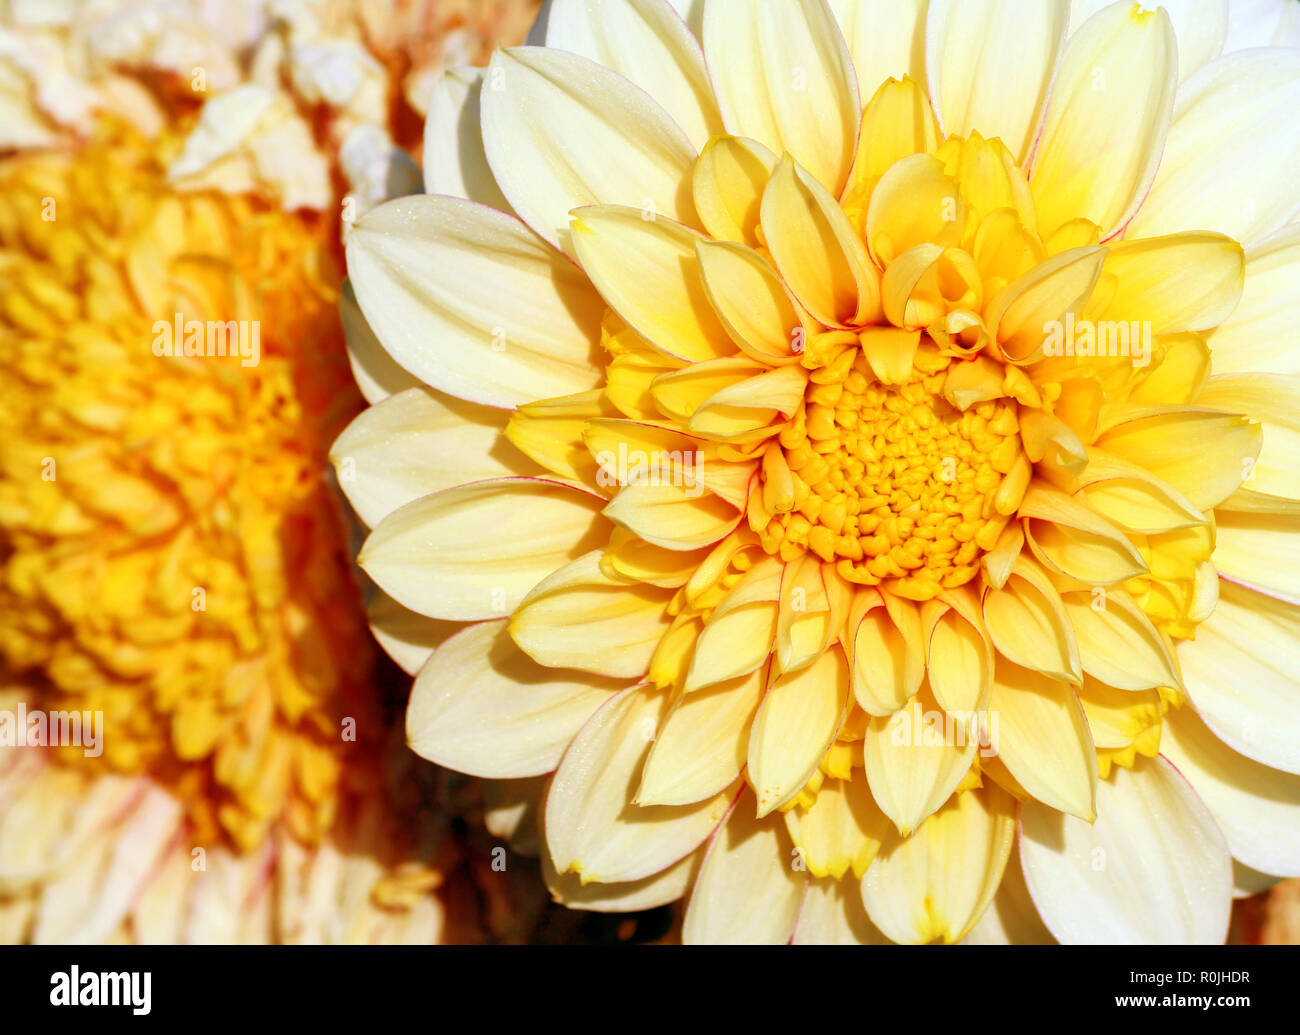 Primo piano di un colore giallo brillante con un crisantemo bianco di grandi dimensioni e di colore giallo scuro cuore accendino gradualmente verso le punte dei petali, due fiori, Foto Stock